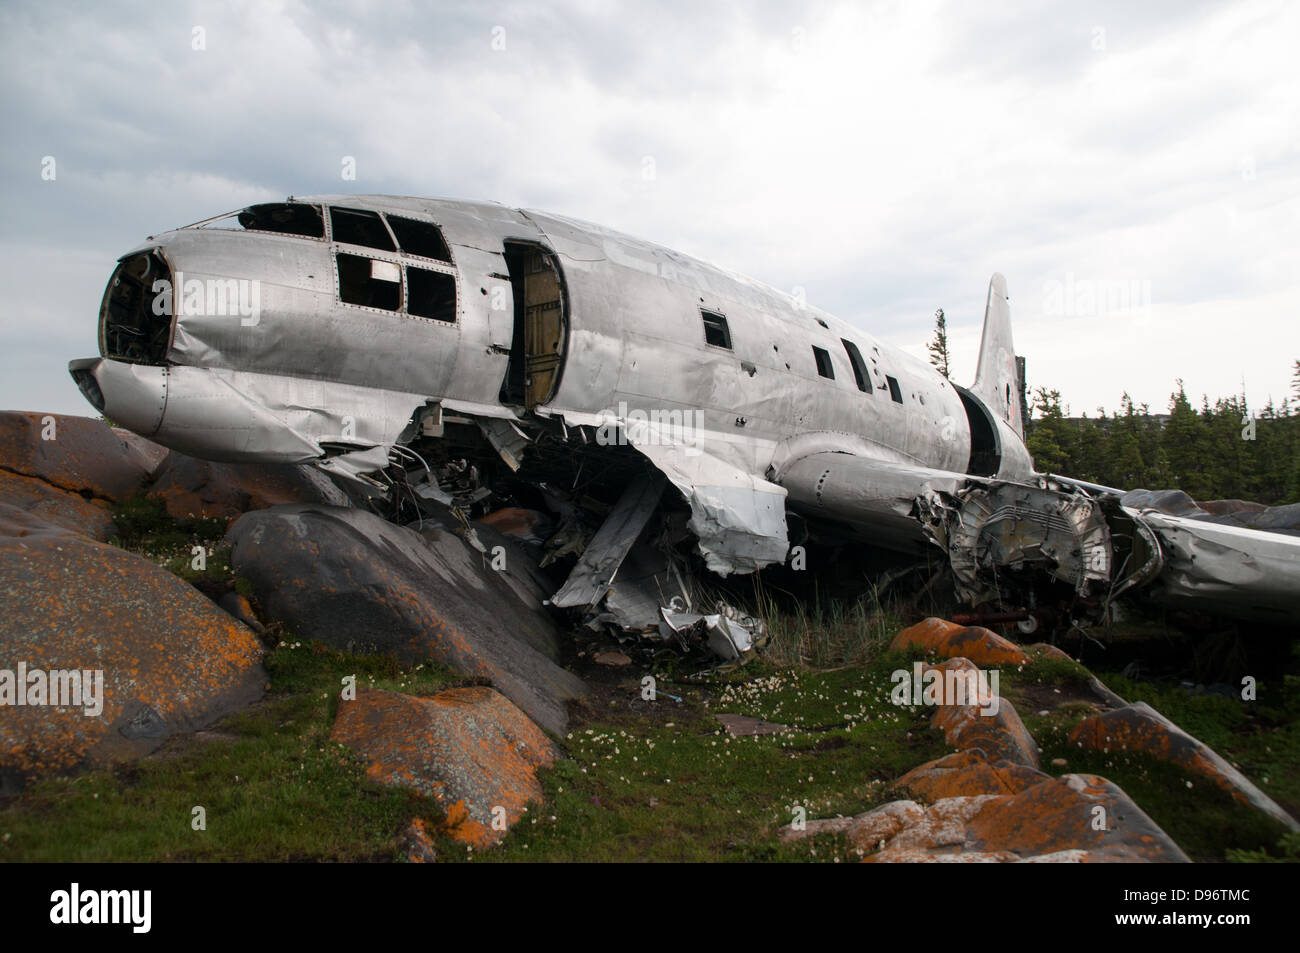 Die C-46 Flugzeug Absturzstelle und Trümmer, bekannt als die "Miss Piggy," die im November 1979 außerhalb der Stadt Churchill, Manitoba, Kanada abgestürzt. Stockfoto